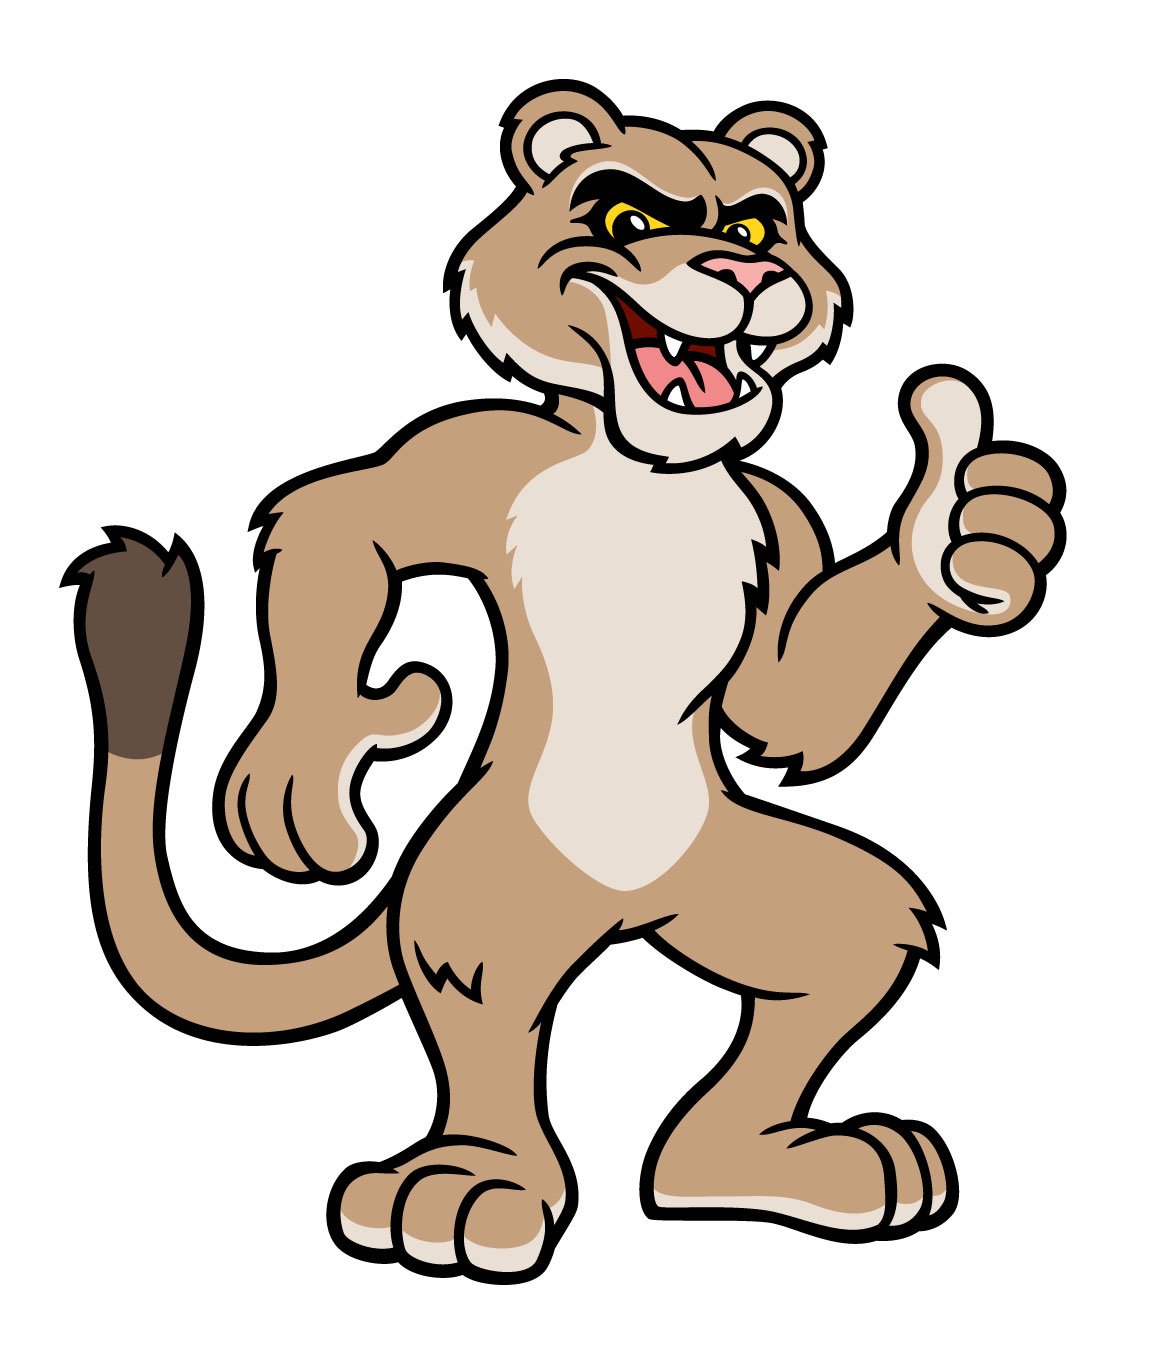 Cougar-Mascot-Character-Vector01.jpg